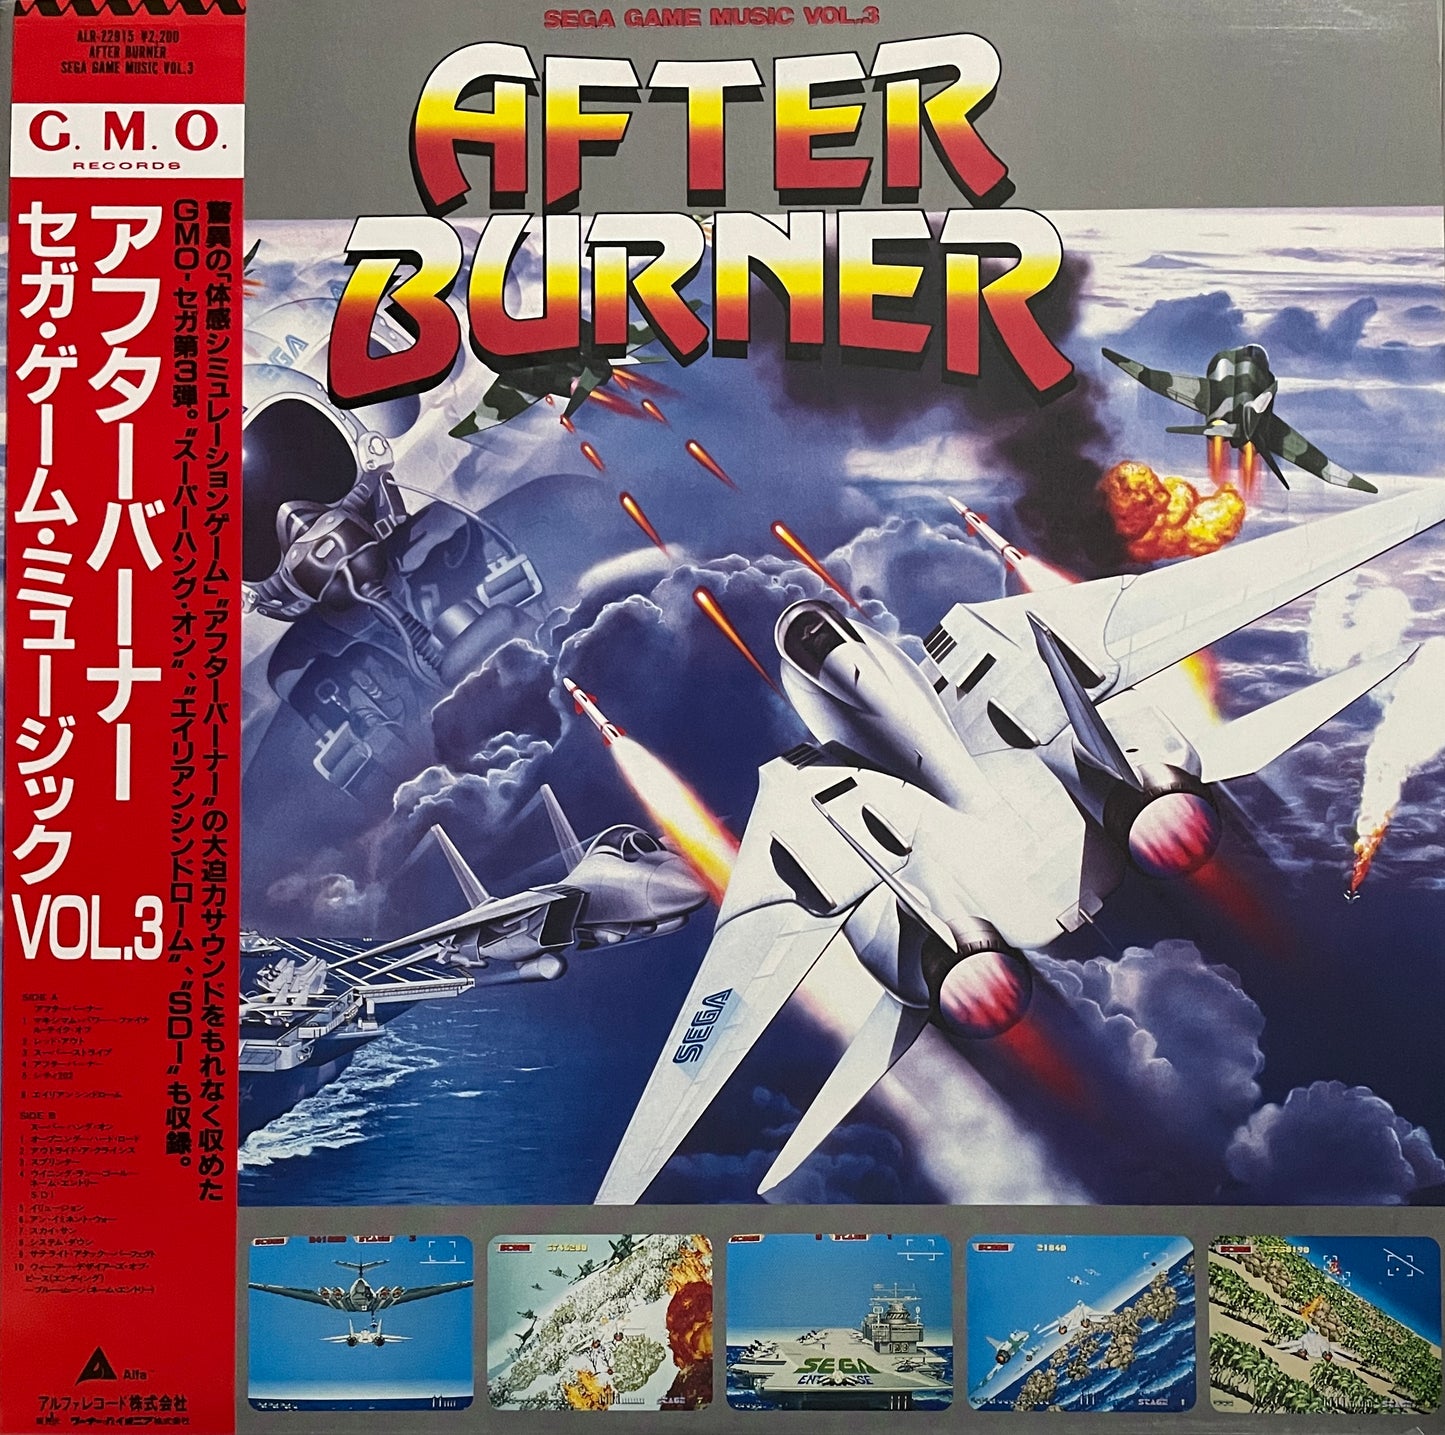 Sega Game Music Vol. 3 "After Burner" (1987)